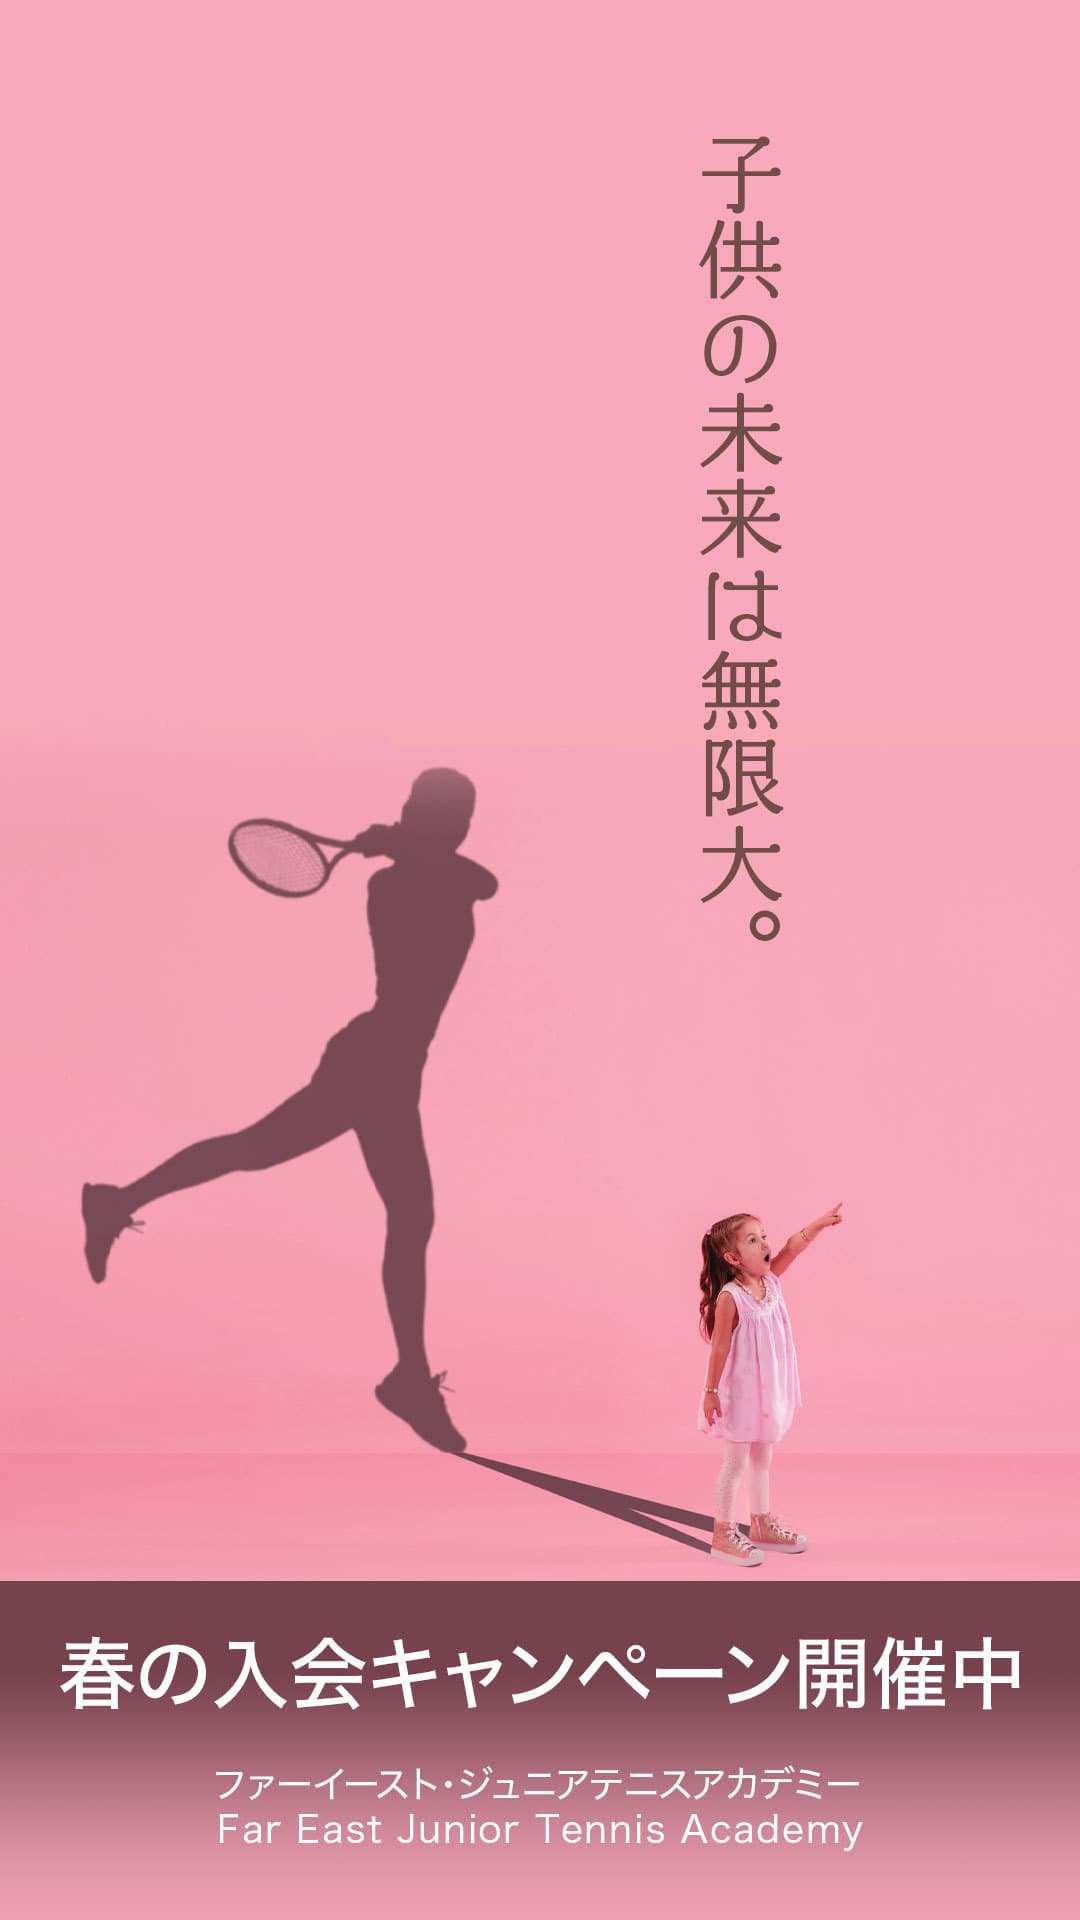 ファーイースト・Jr.テニスアカデミー春の入会キャンペーン開催中！